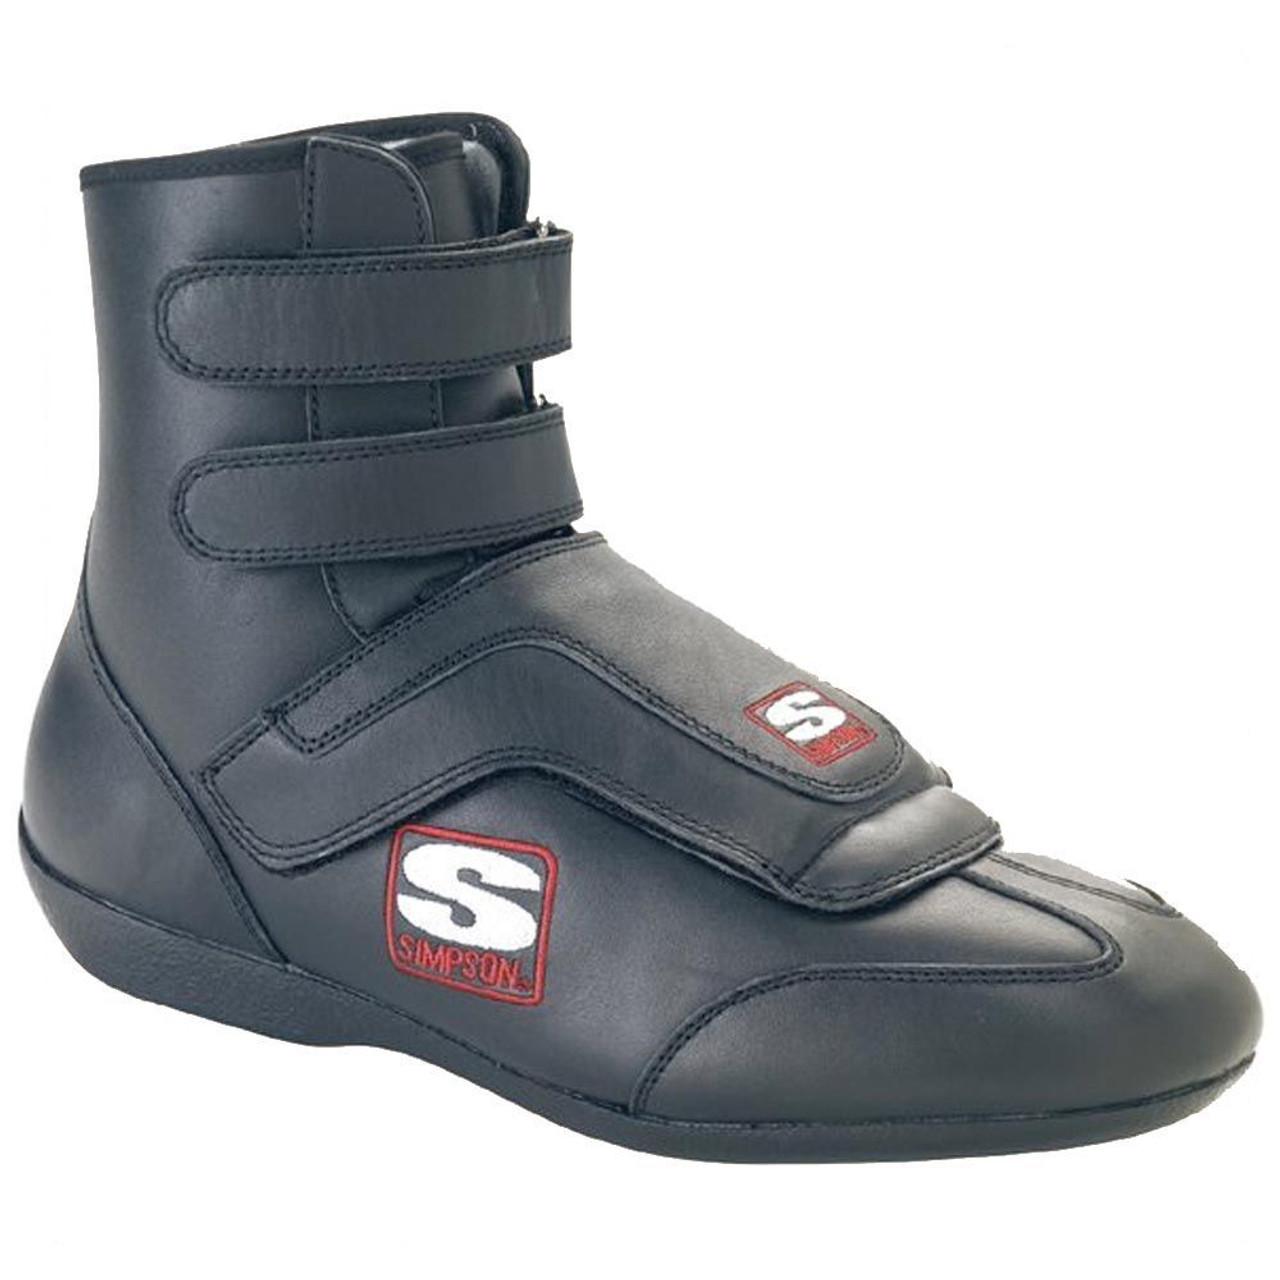 Simpson Safety Sprint Shoe 9 Black SFI